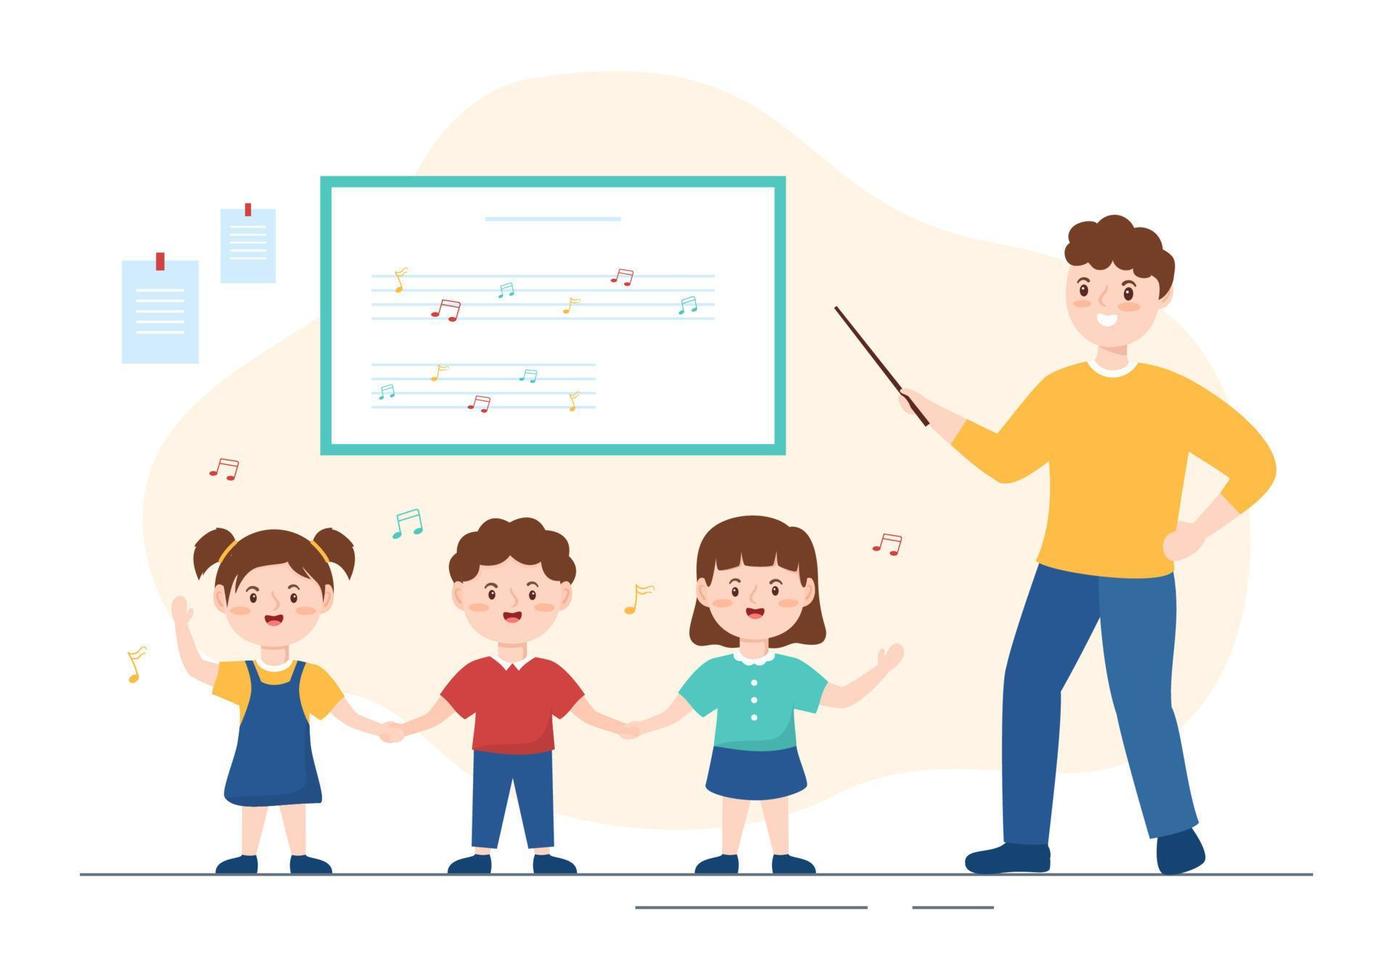 modelo de escola de música na mão desenhada ilustração plana dos desenhos animados tocando vários instrumentos musicais, aprendendo músicos e cantores de educação vetor